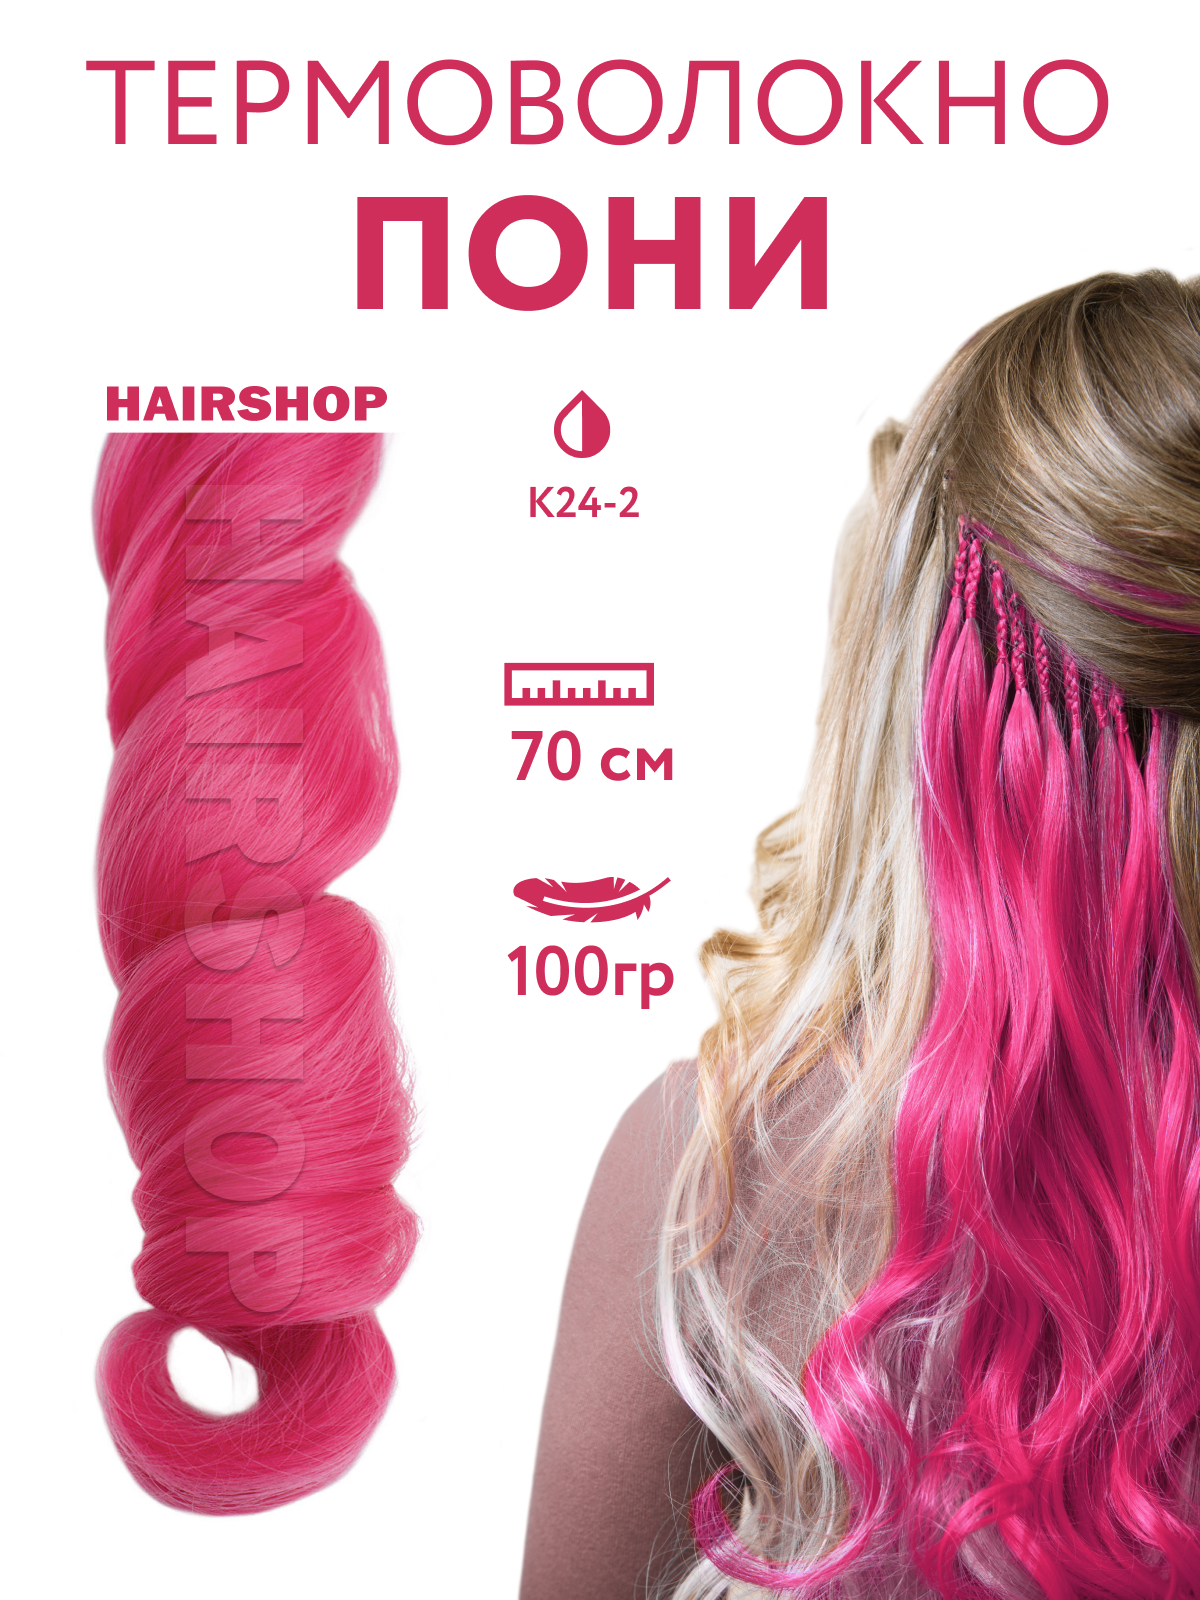 Канекалон HAIRSHOP Пони HairUp для точечного афронаращивания К24-2 Темно-розовый 1,4м пряжа австралийский меринос 95%мер шерсть 5% акрил объёмный 400м 100гр 374 розовый беж